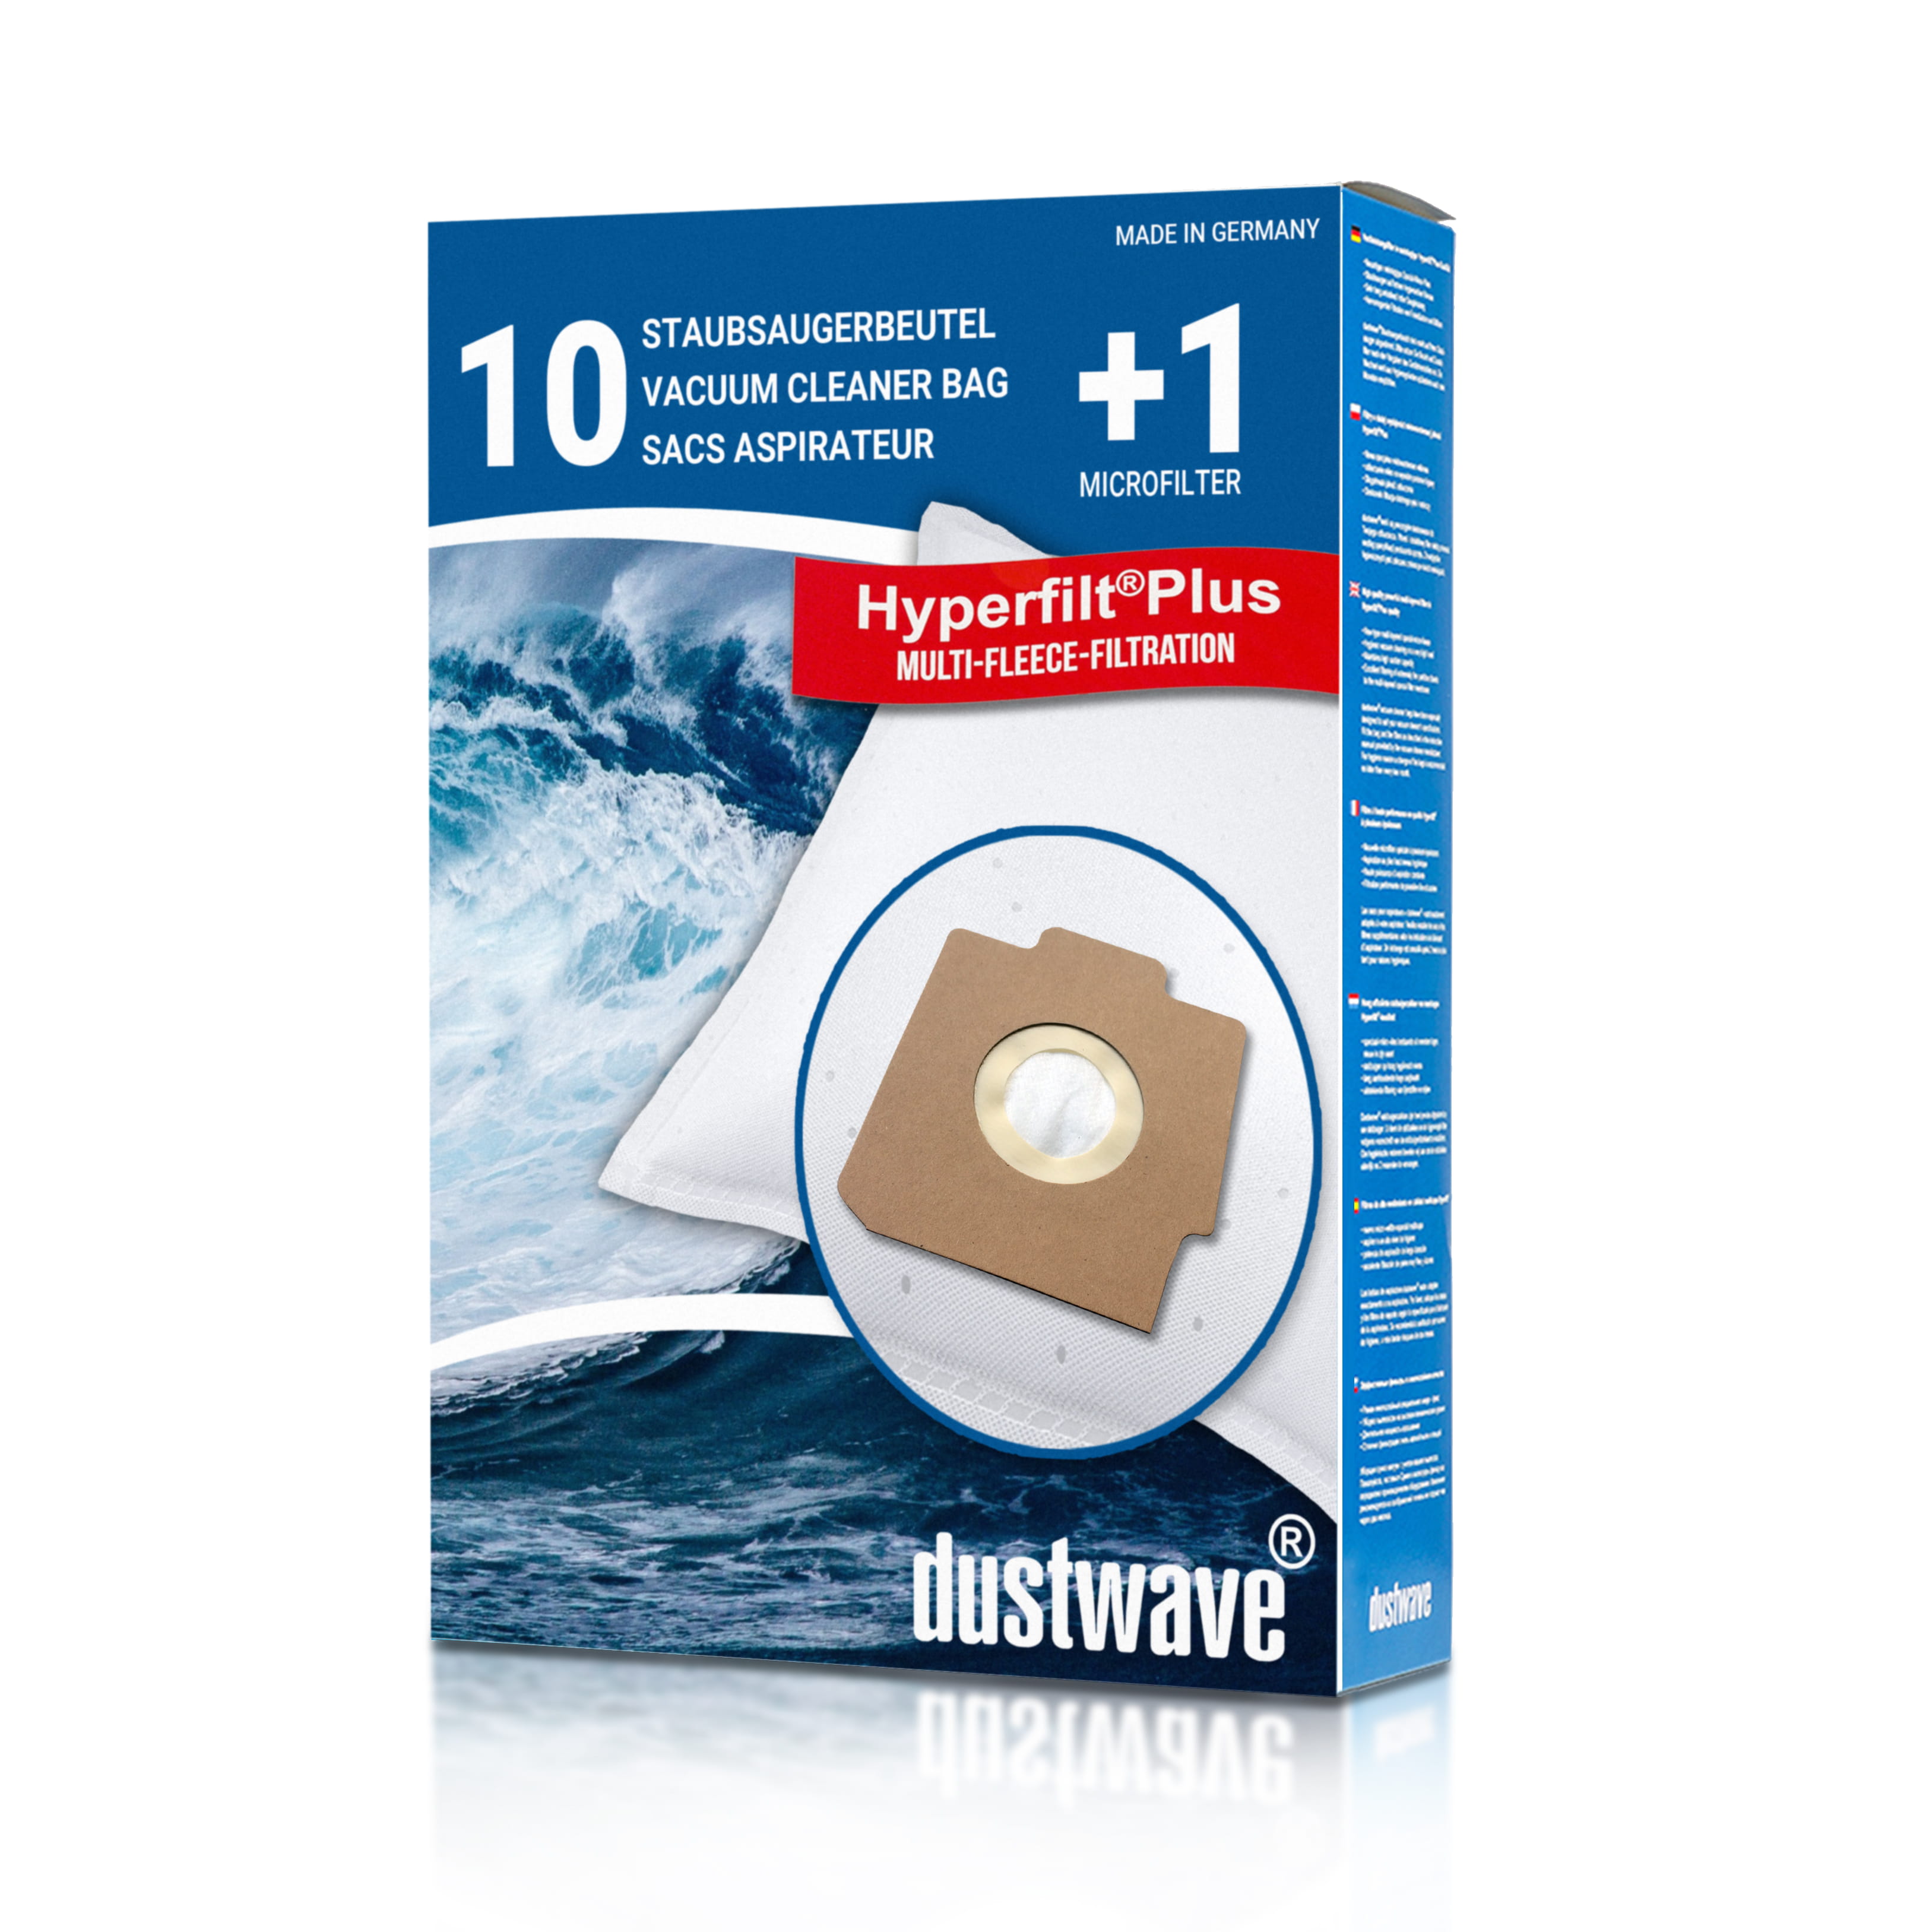 Dustwave® 10 Staubsaugerbeutel für Hoover Super 1000 - hocheffizient, mehrlagiges Mikrovlies mit Hygieneverschluss - Made in Germany